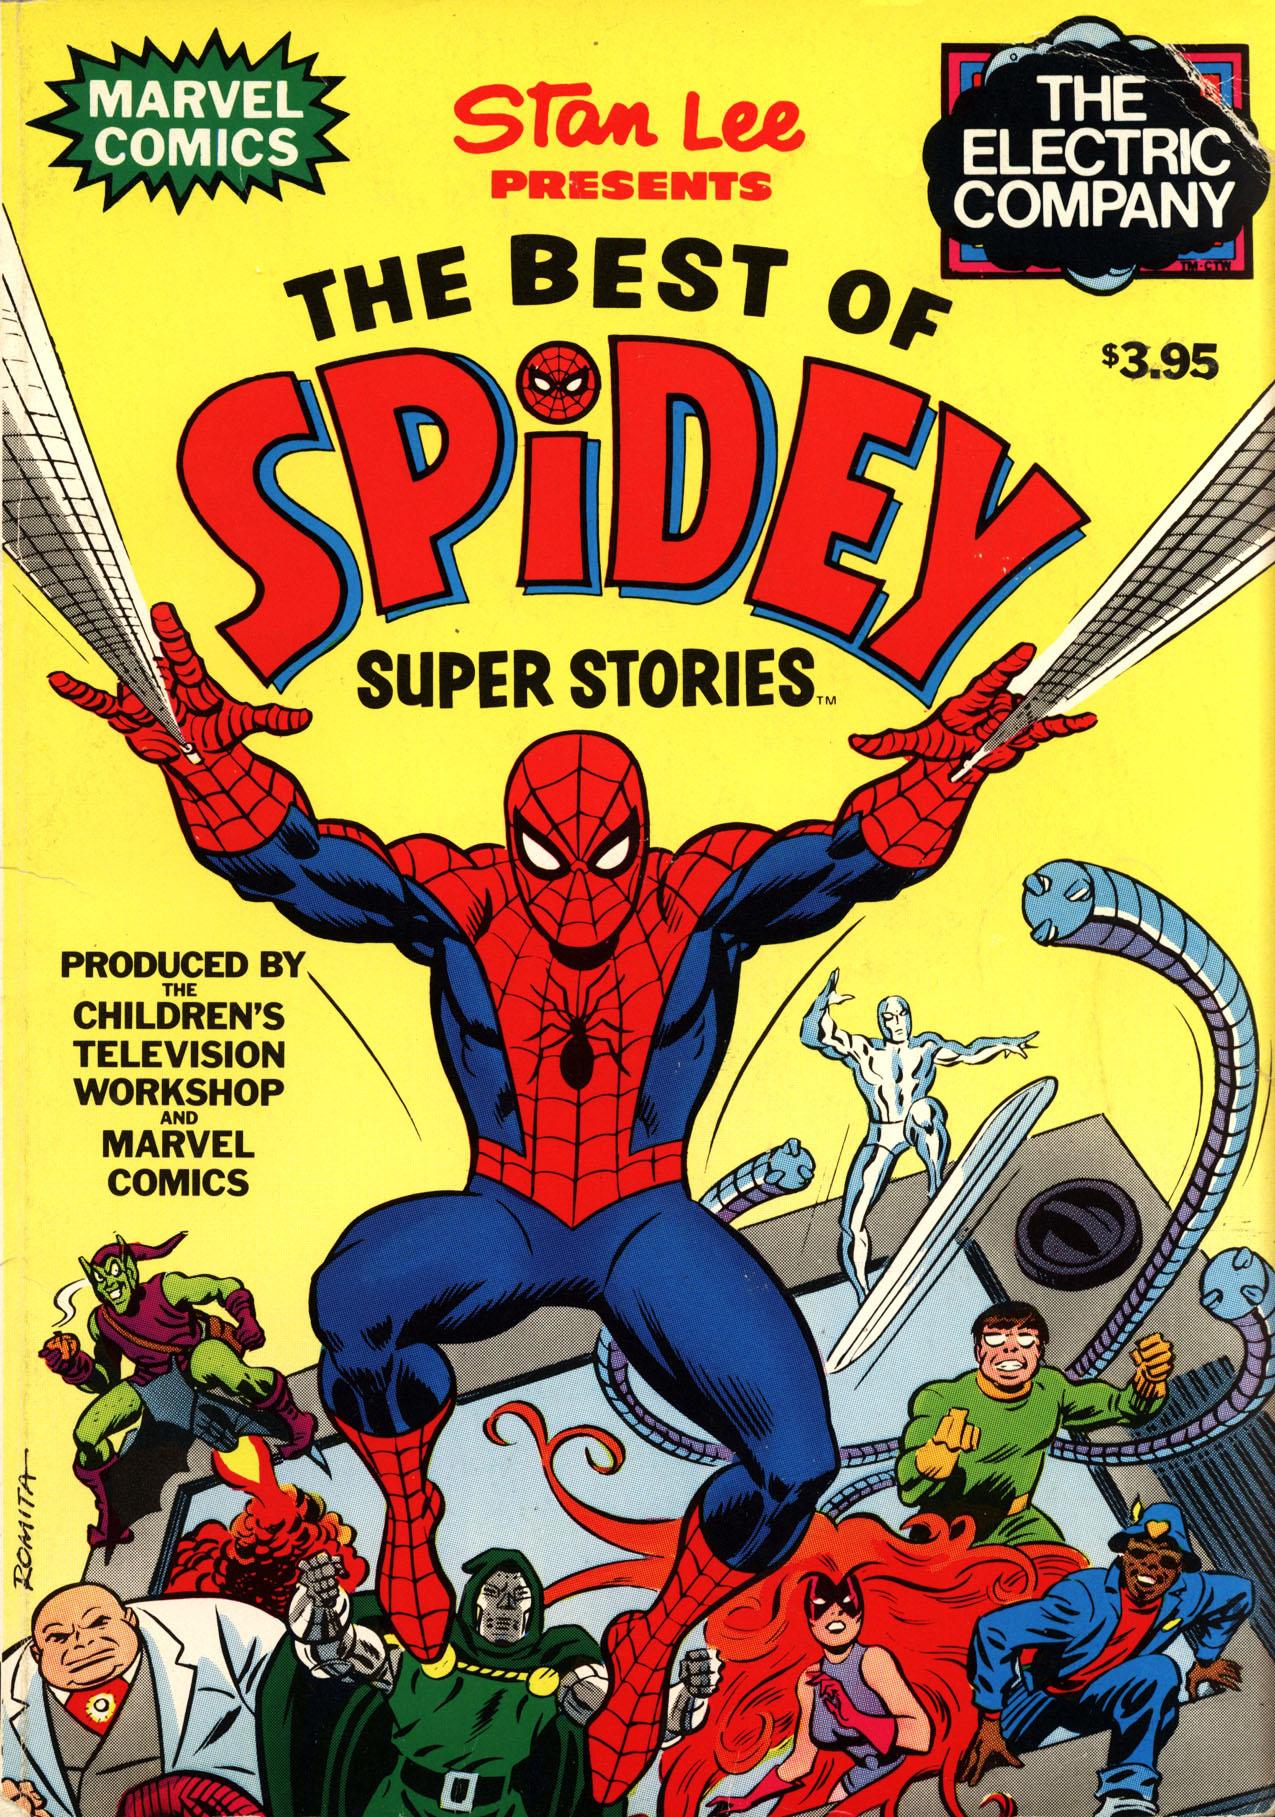 Best of Spidey Super Stories Vol. 1 #1